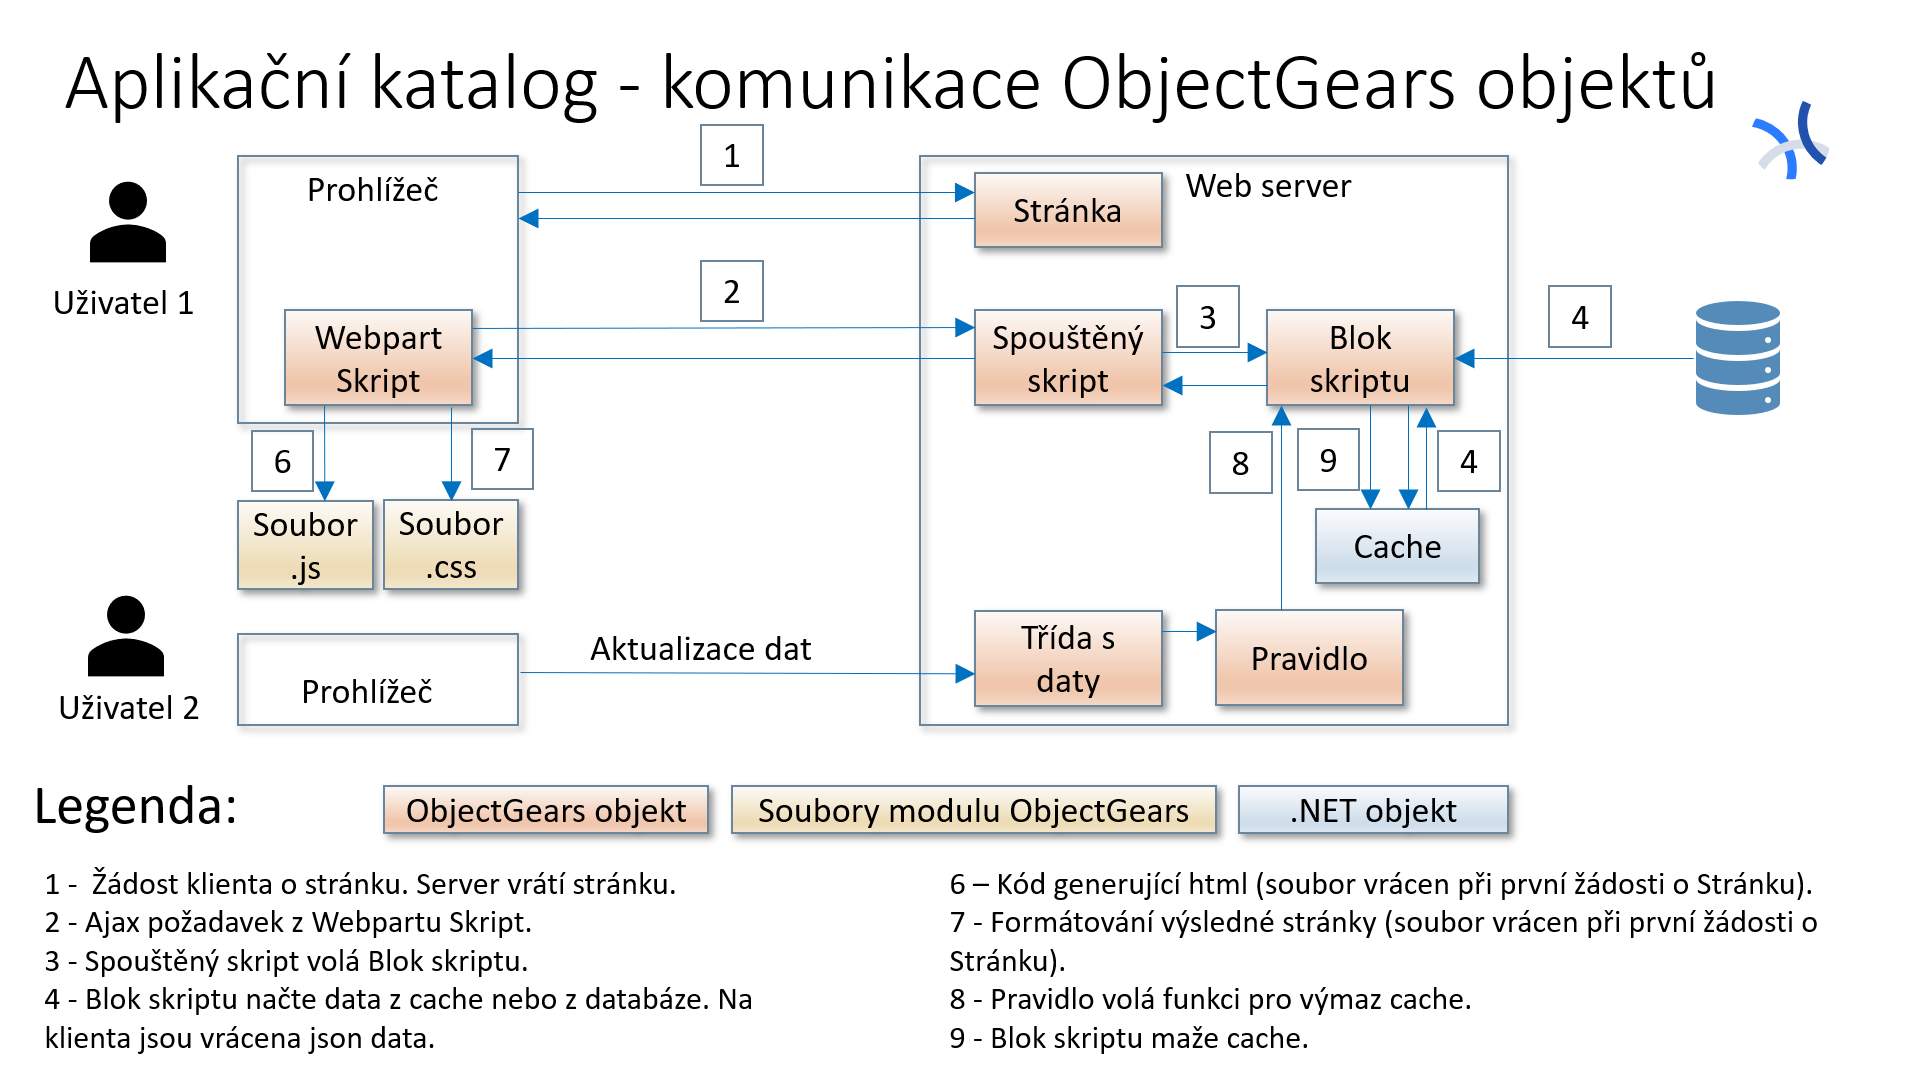 Aplikační katalog a CMDB - komunikace ObjectGears objektů